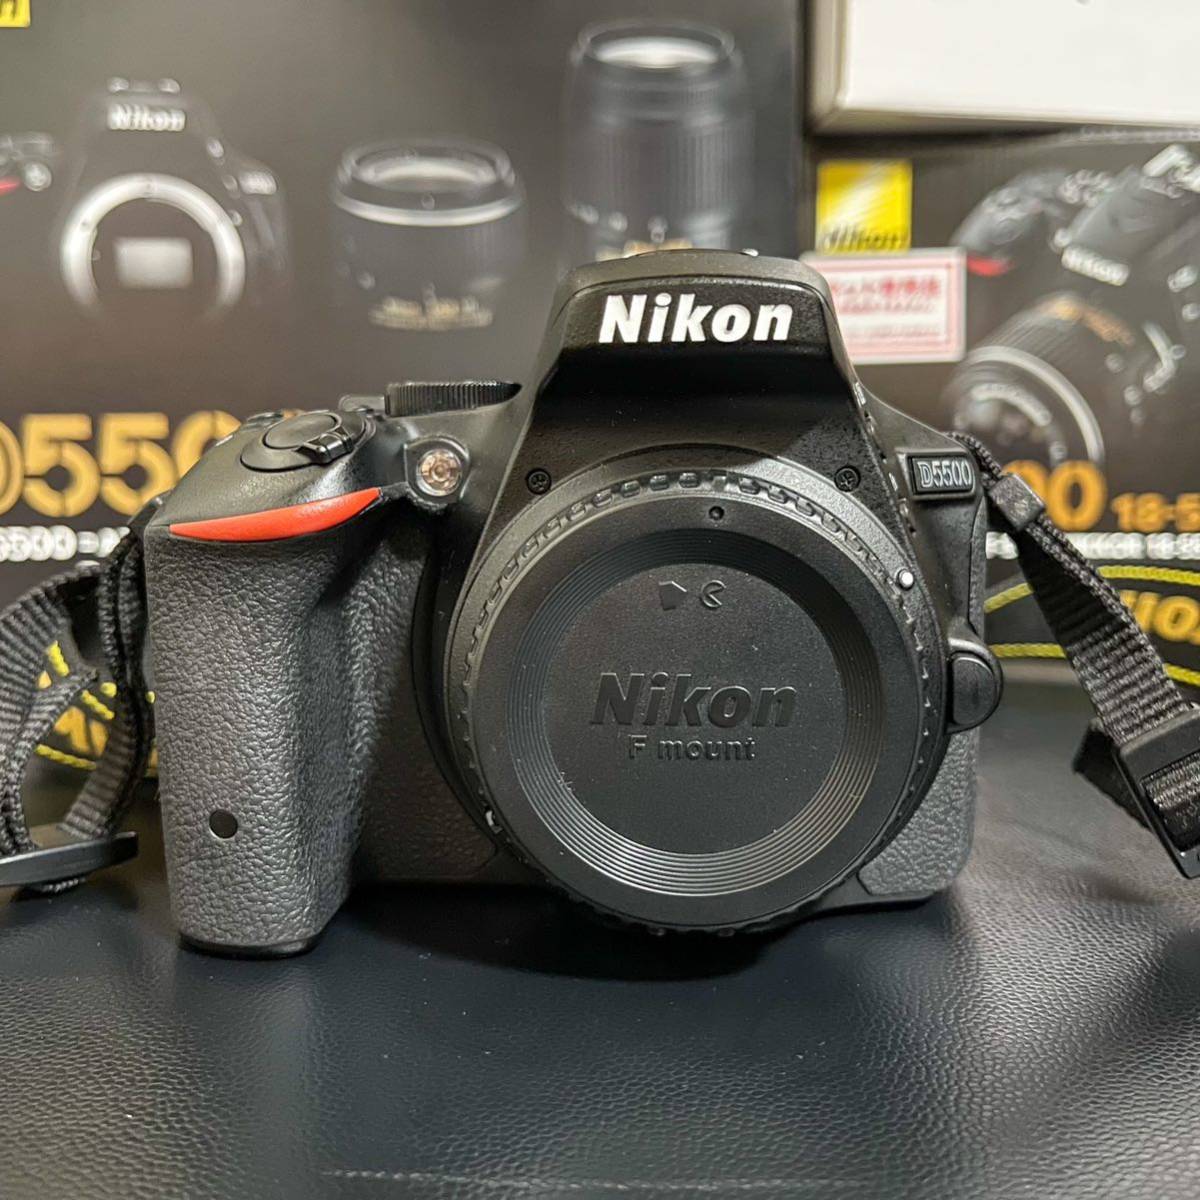 Nikon ニコン D5500 ダブルズームキット 標準レンズ 18-55 望遠レンズ